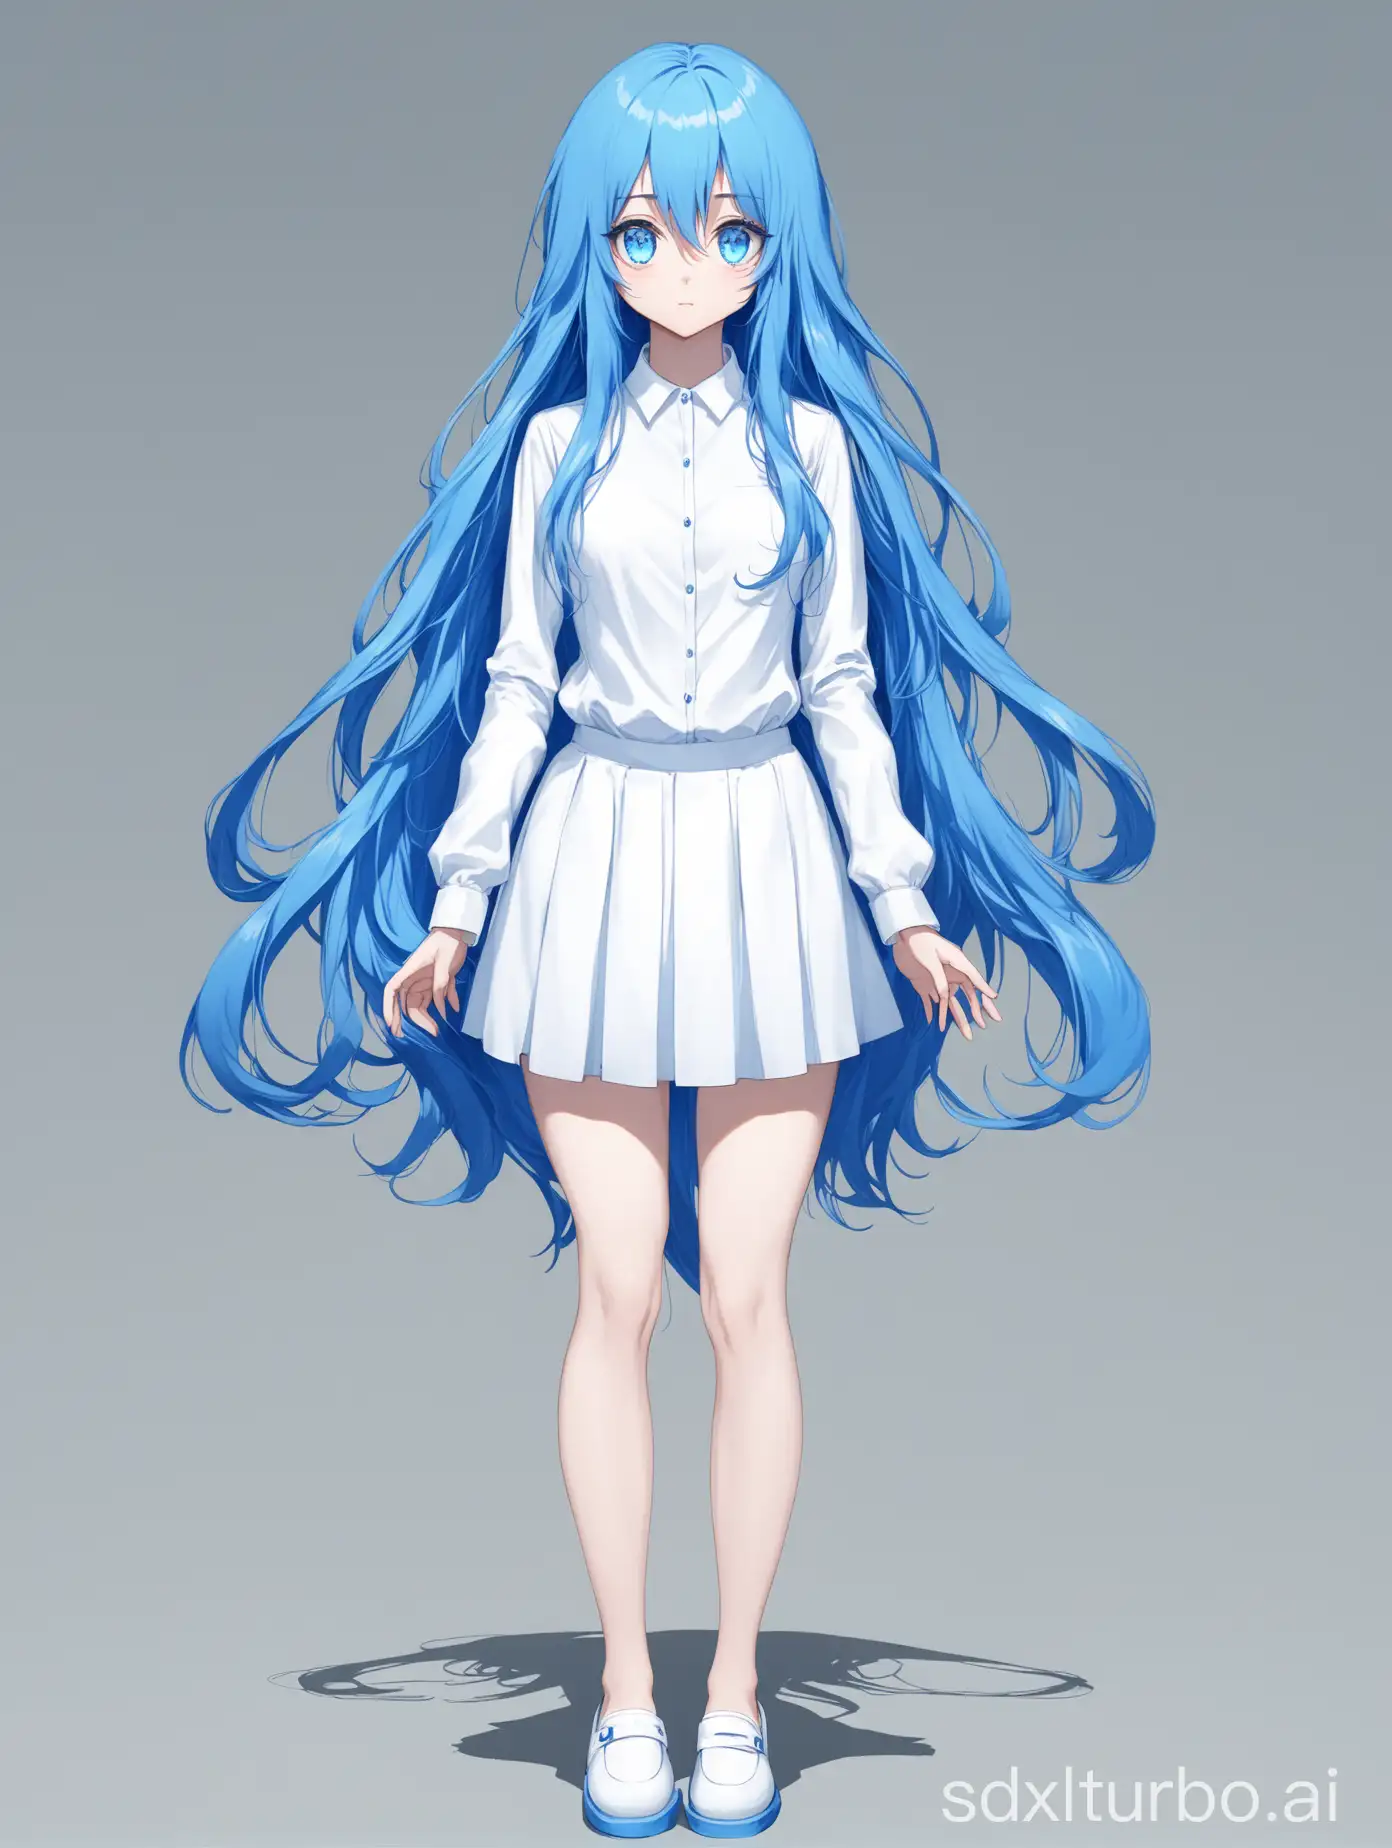 blue long hair, blue double eyes, white long sleeved shirt, white short skirt, full body picture